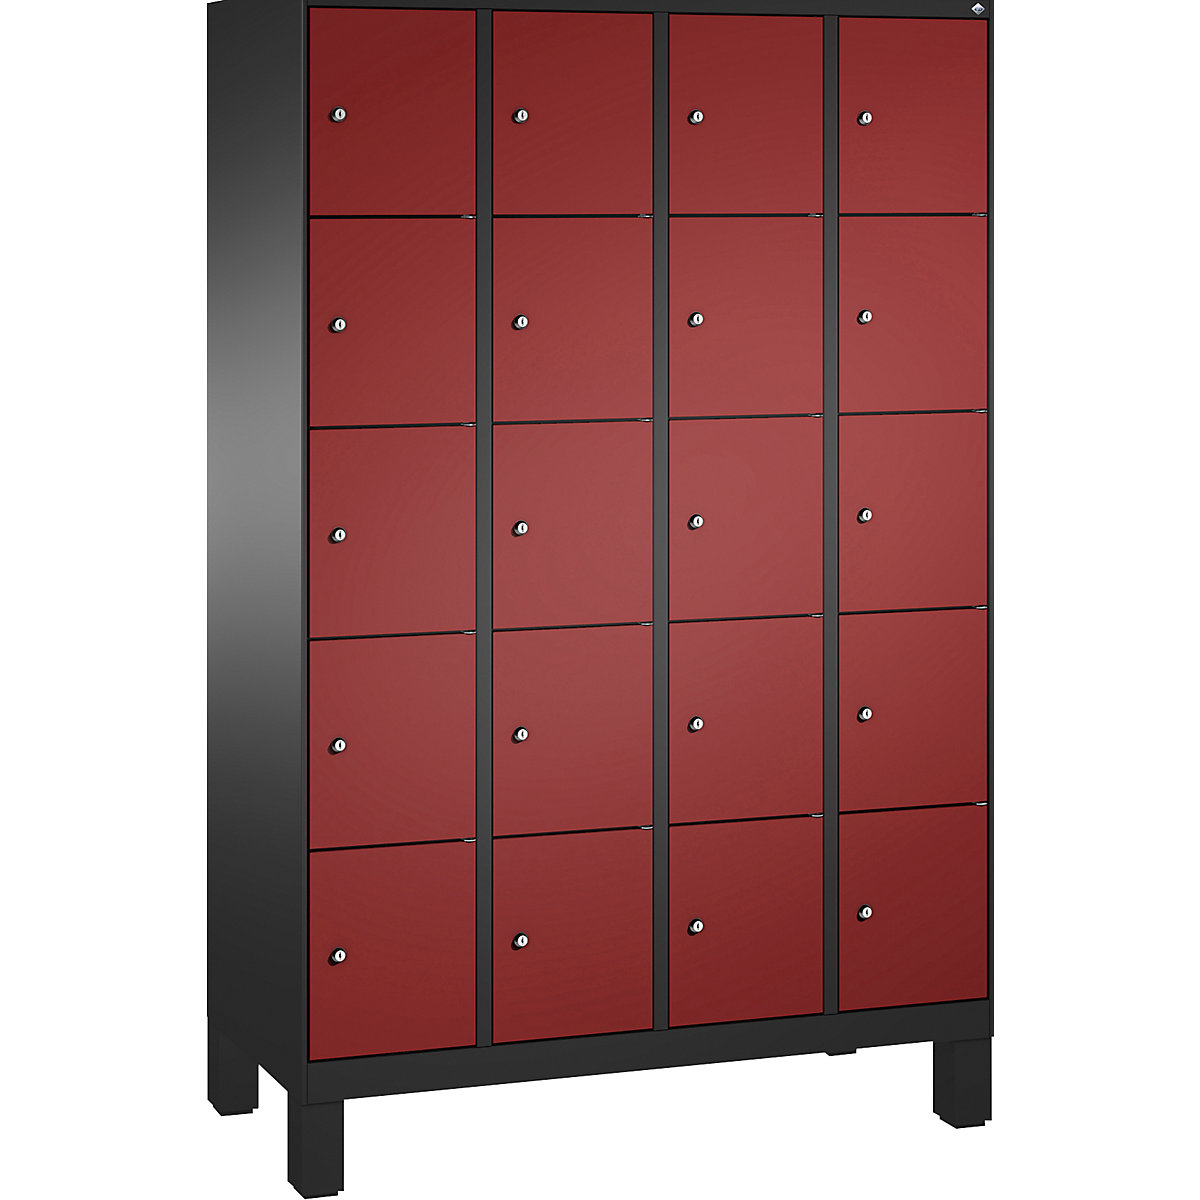 Armoire à casiers sur pieds EVOLO – C+P, 4 compartiments, 5 casiers chacun, largeur compartiments 300 mm, gris noir / rouge rubis-3